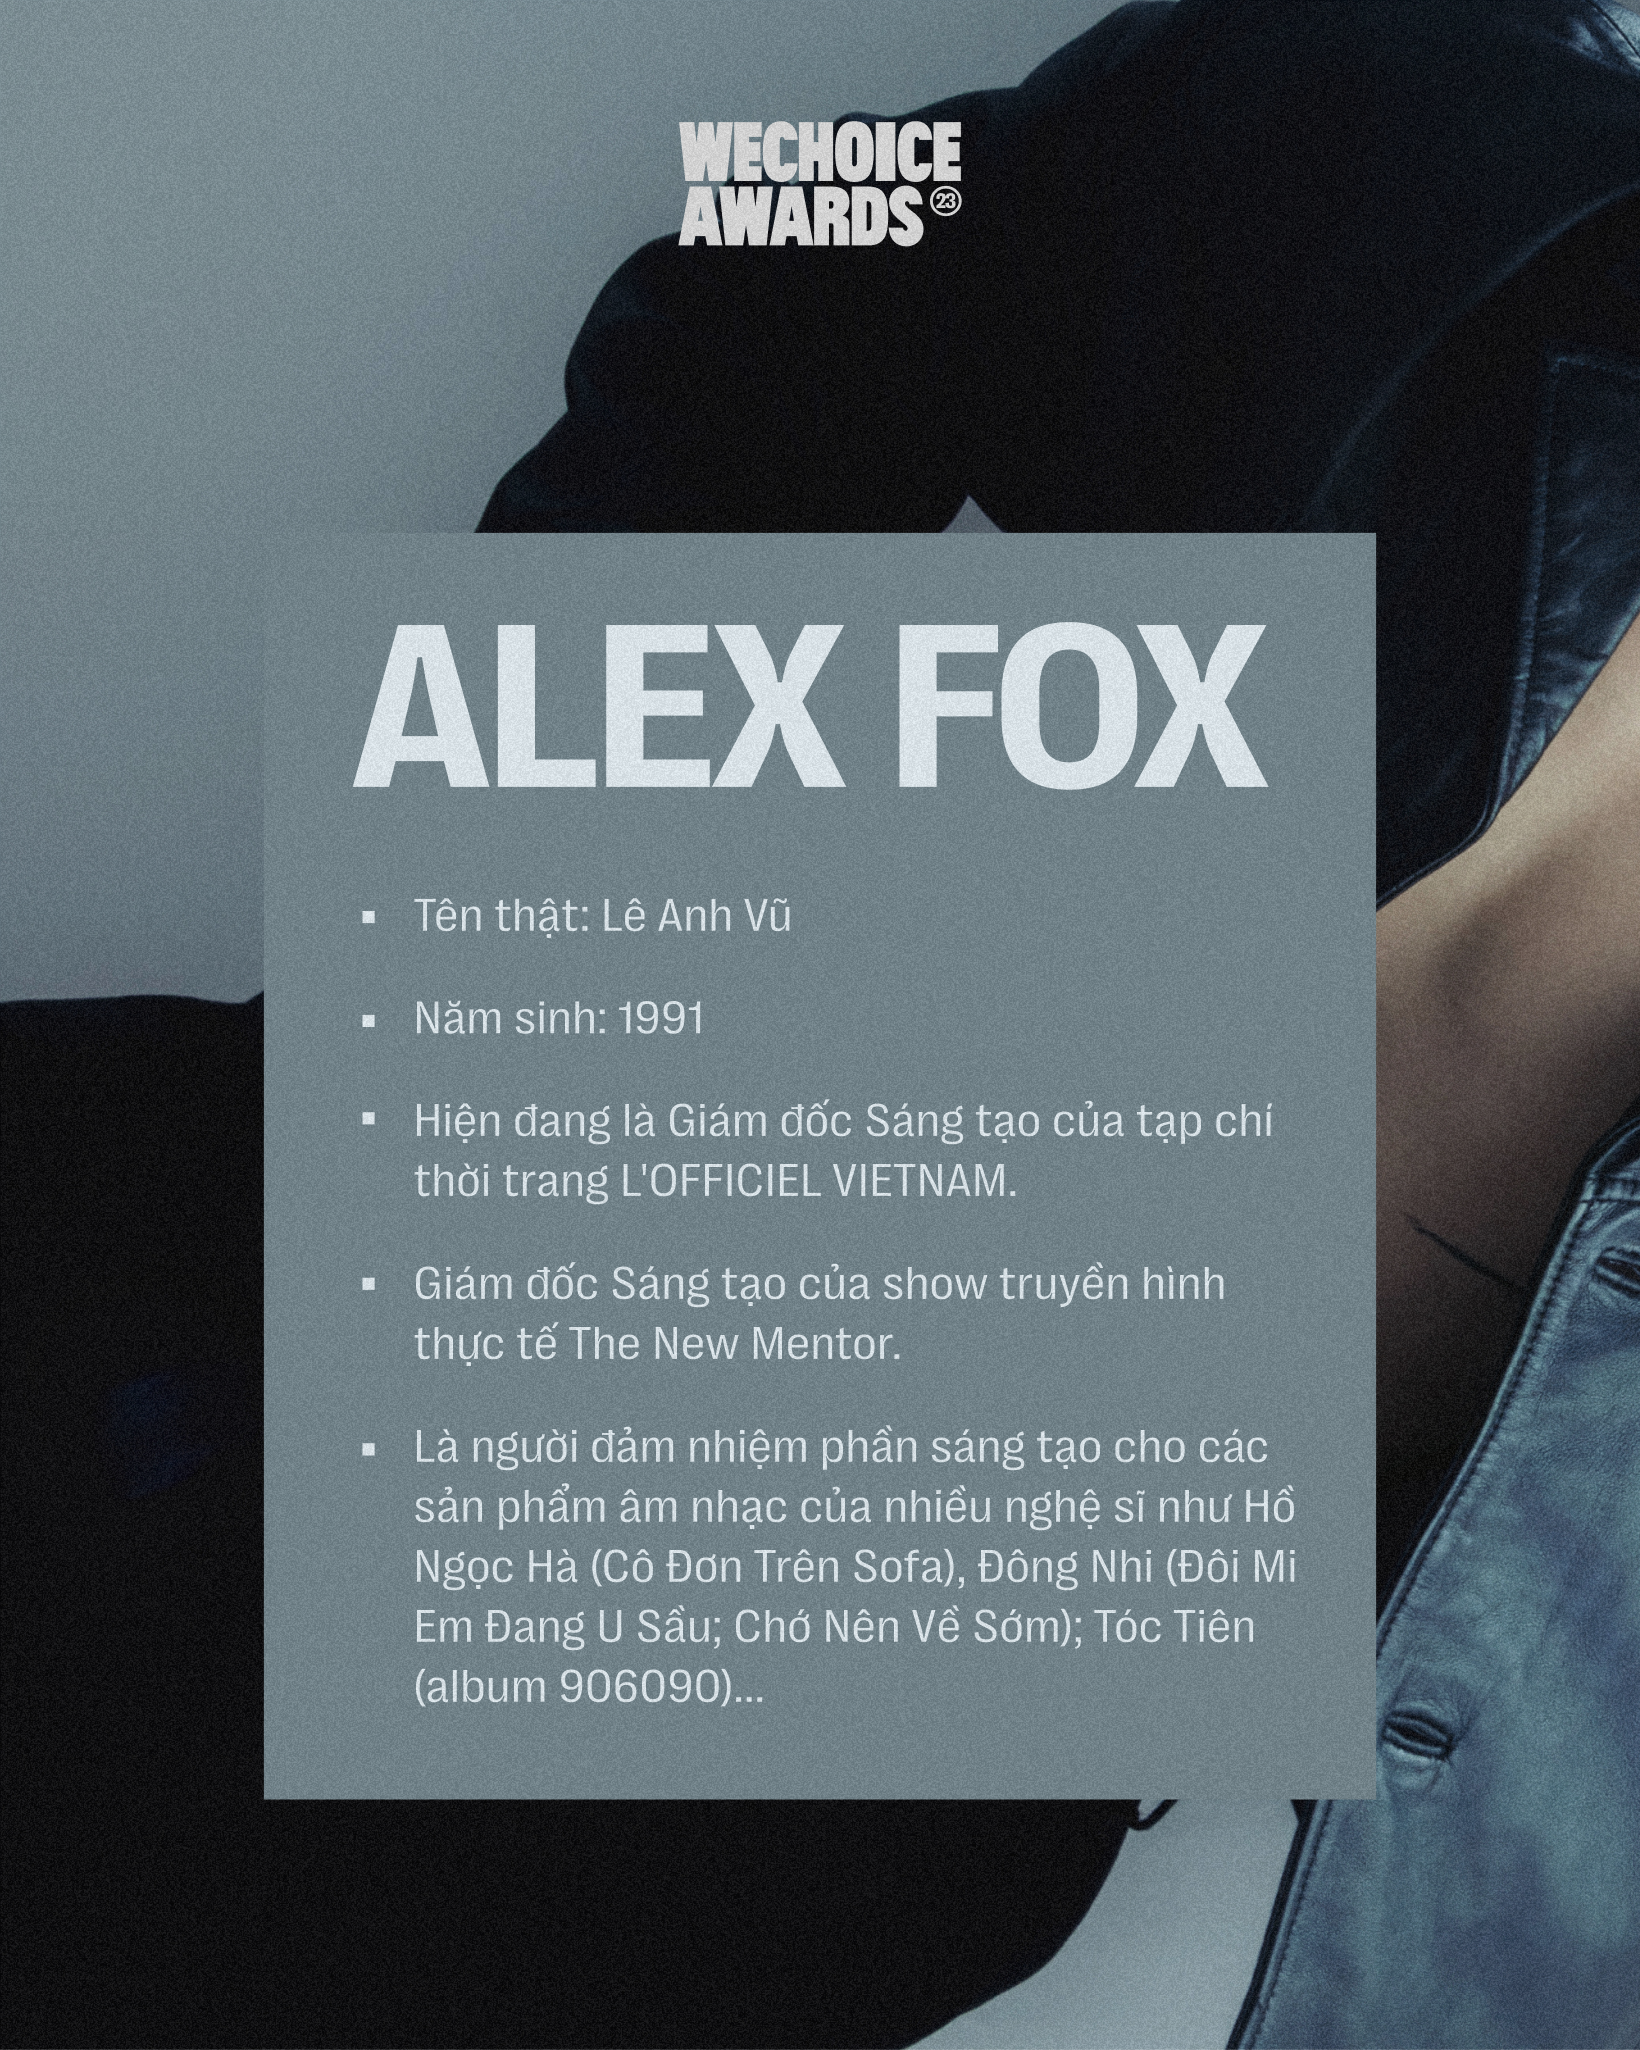 Giám đốc Sáng tạo Alex Fox: “Dân chơi thế hệ mới” của ngành thời trang Việt- Ảnh 3.